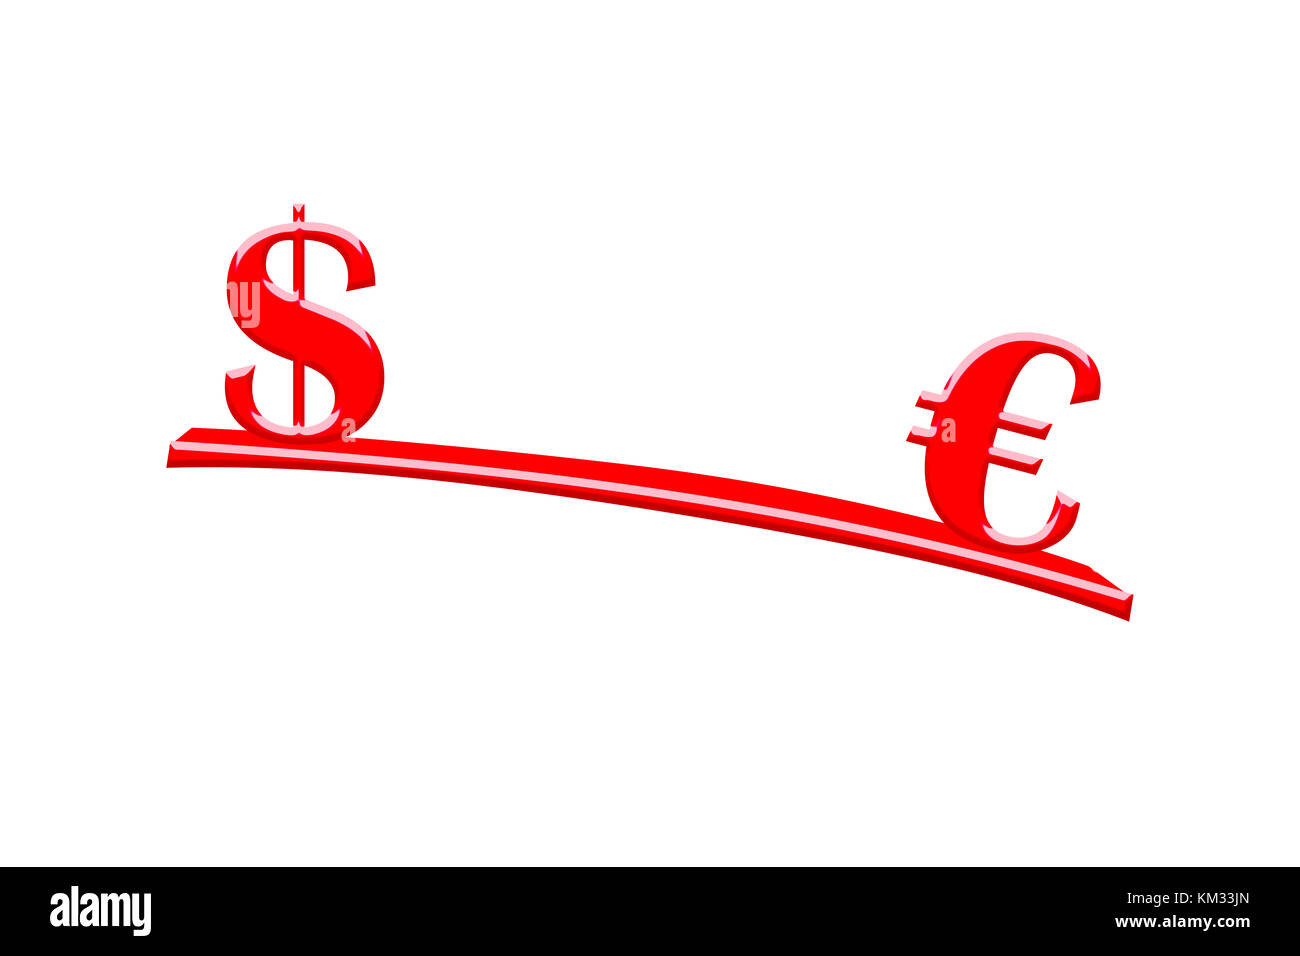 Rojo ilustrativa signo del dólar y el euro con finanzas concepto centrado en la comparación de los tipos de cambio y de equilibrio, aislado sobre fondo blanco. Foto de stock